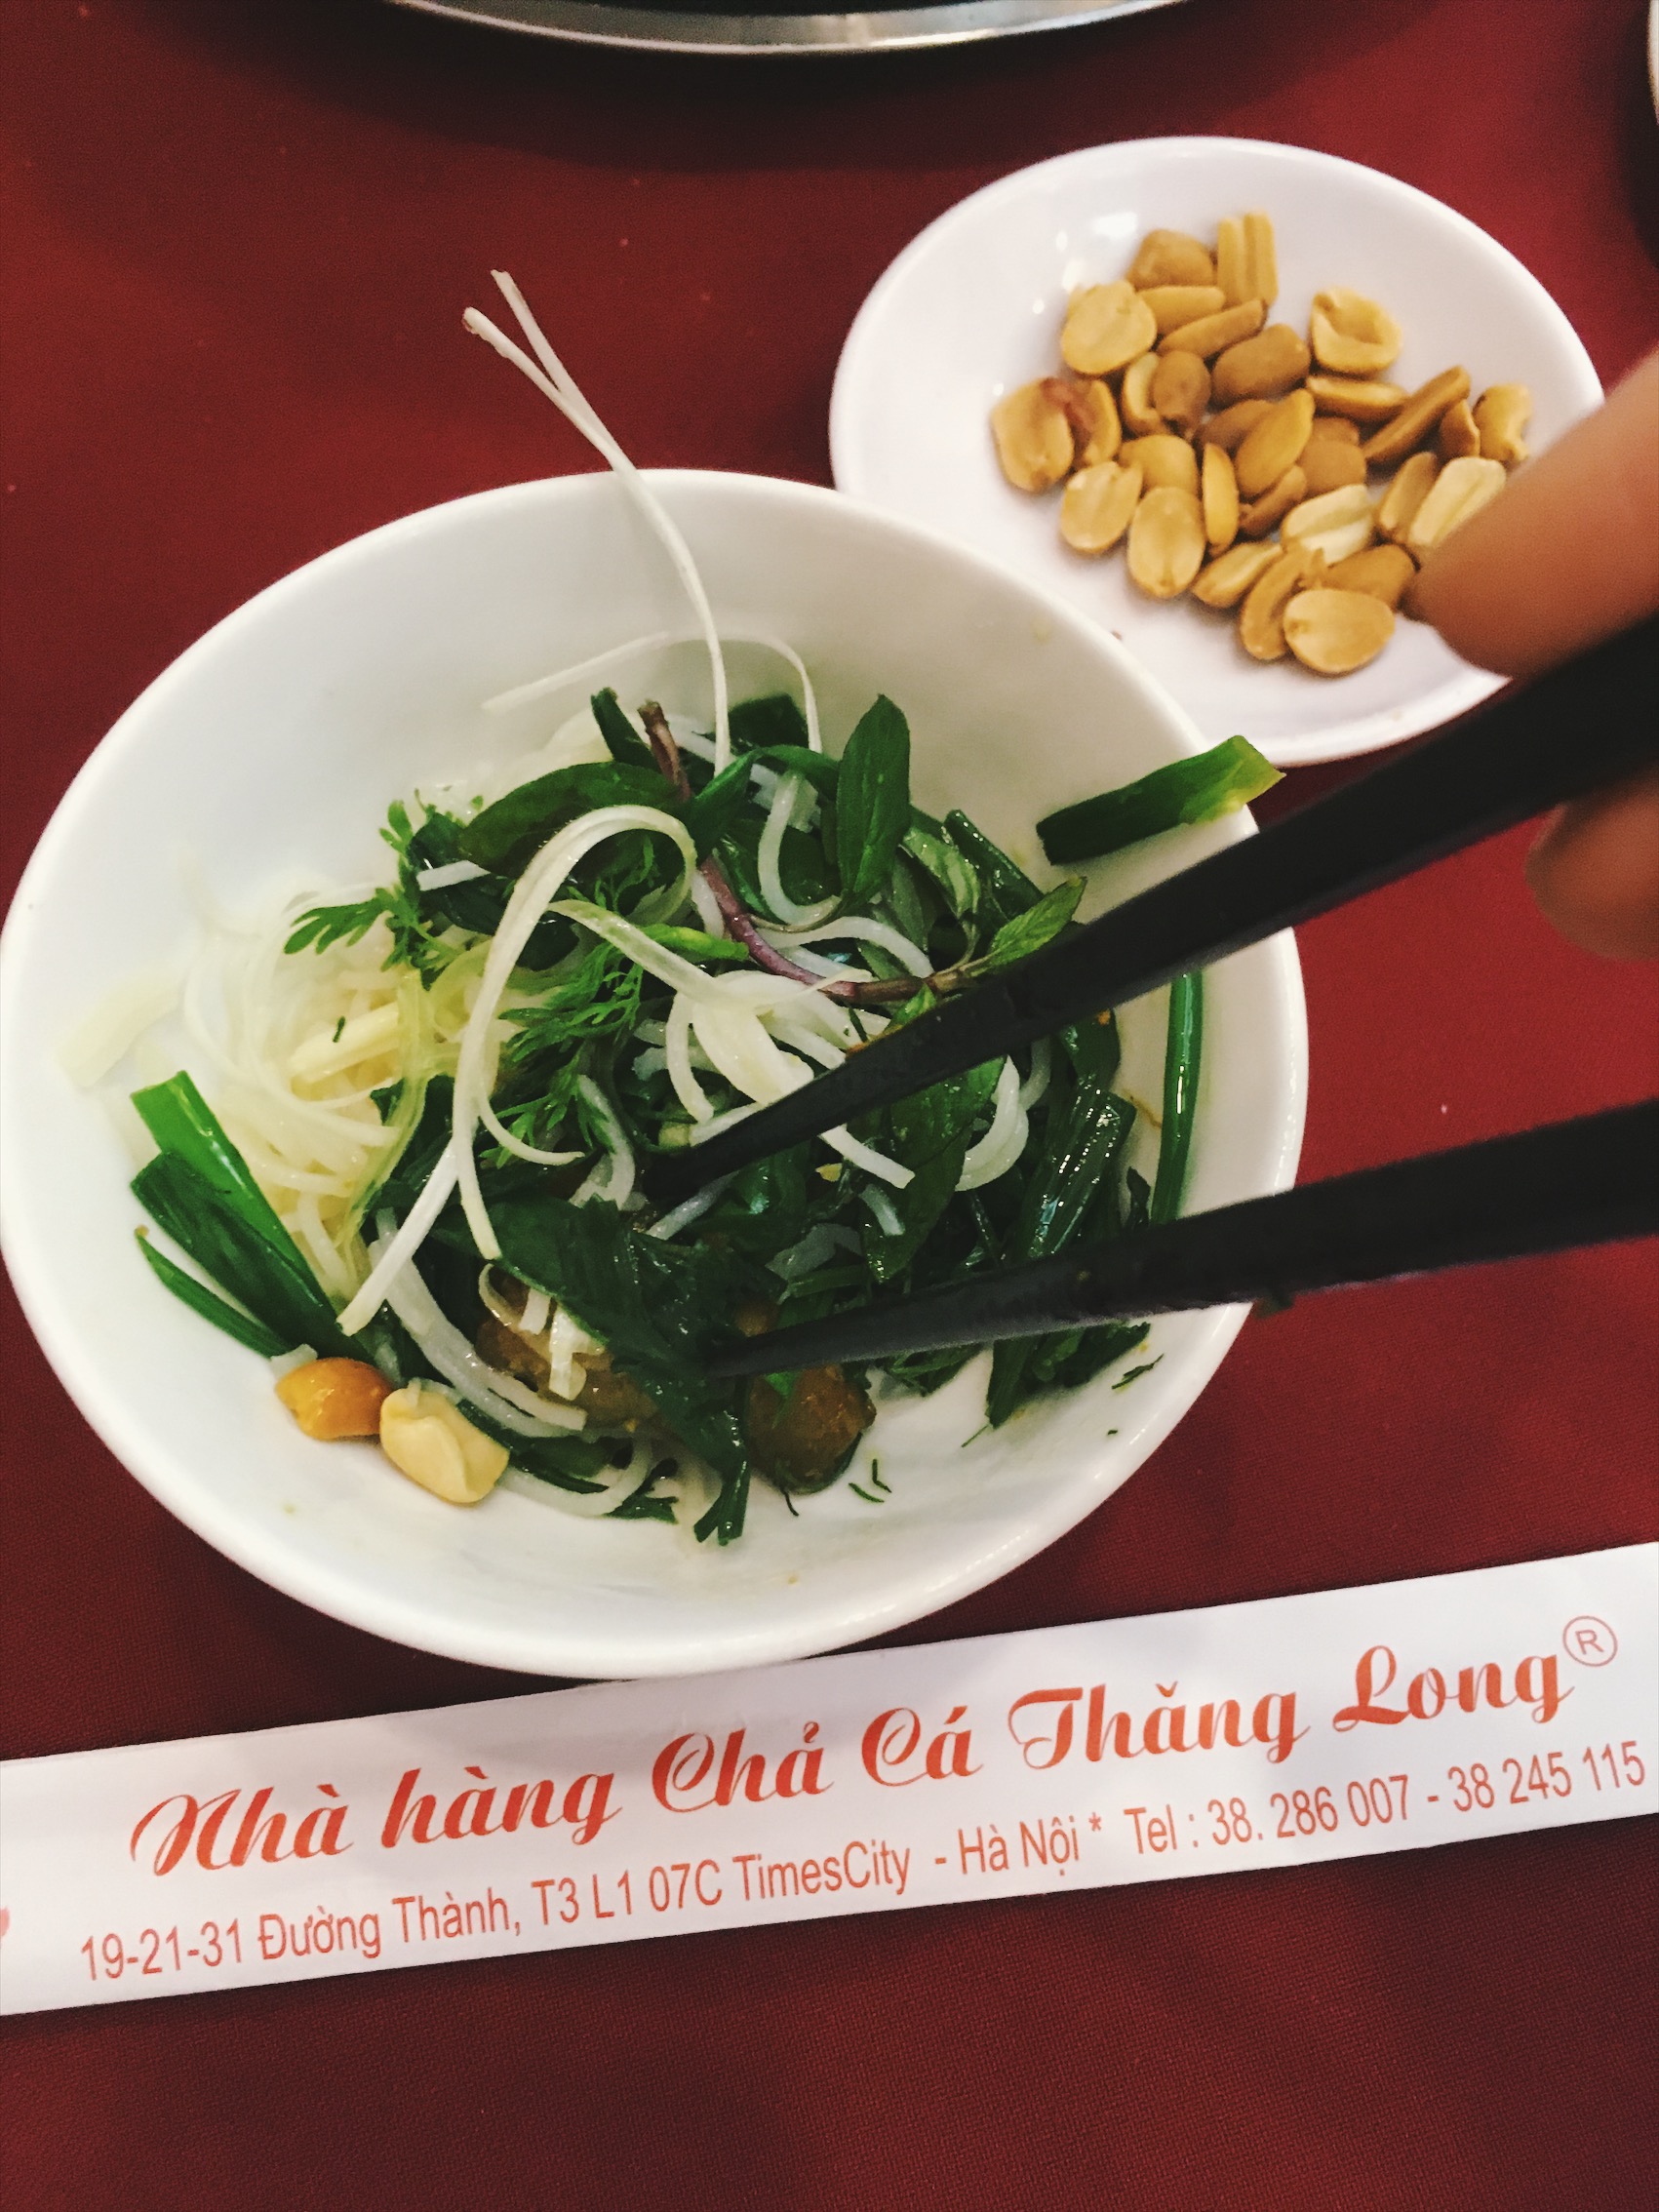 Amazingly tasty this typical Hanoian dish: Cha Ca.